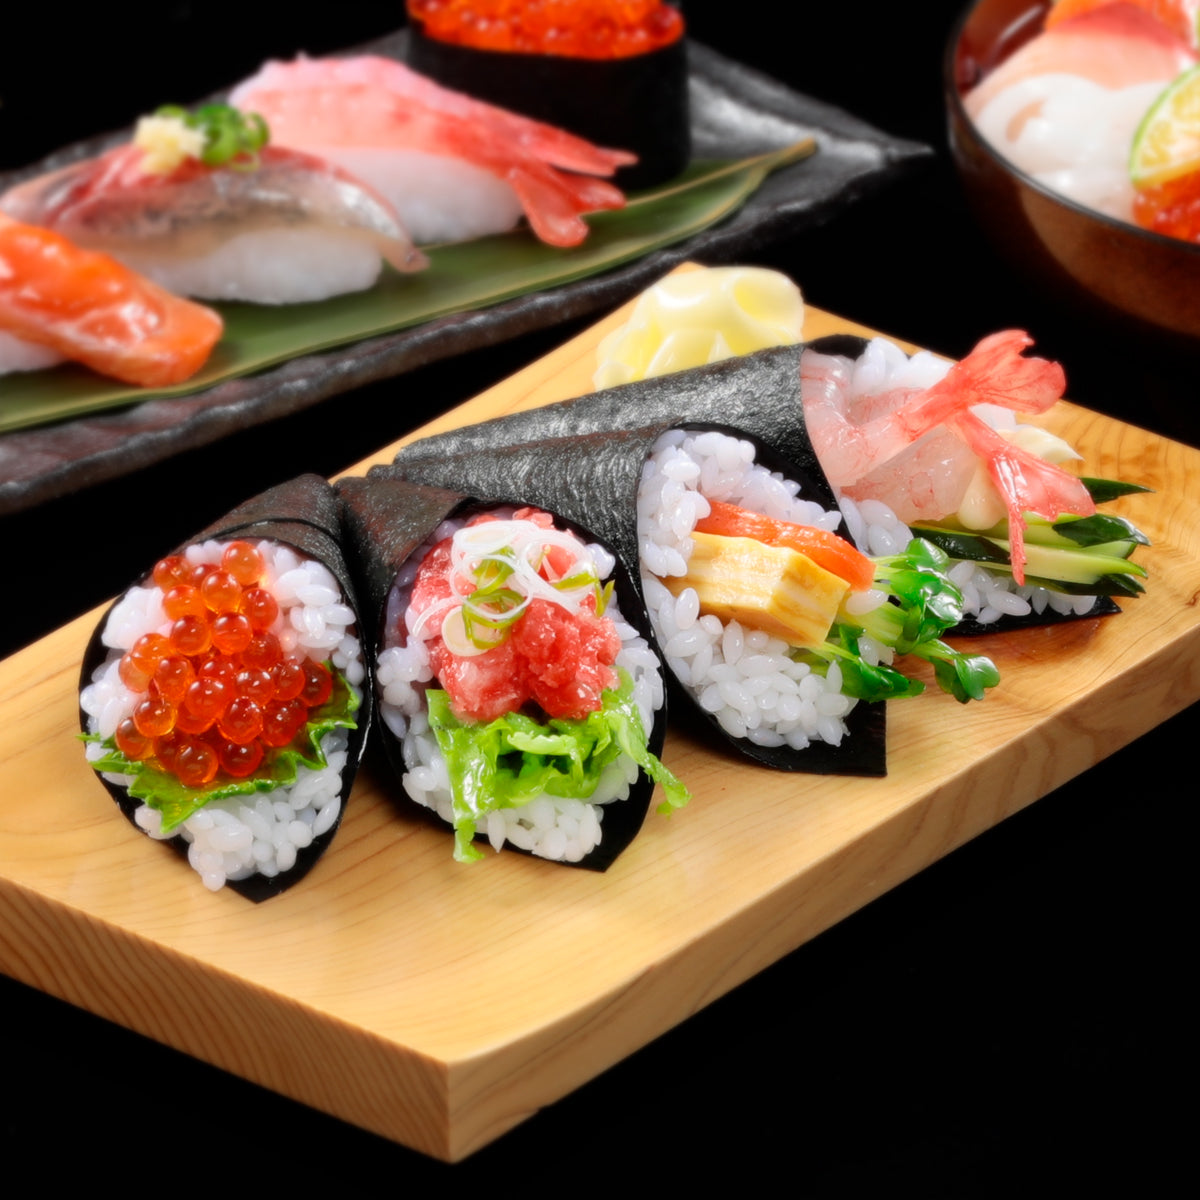 オリジナル食品サンプル「手巻き寿司」のイメージ画像です。